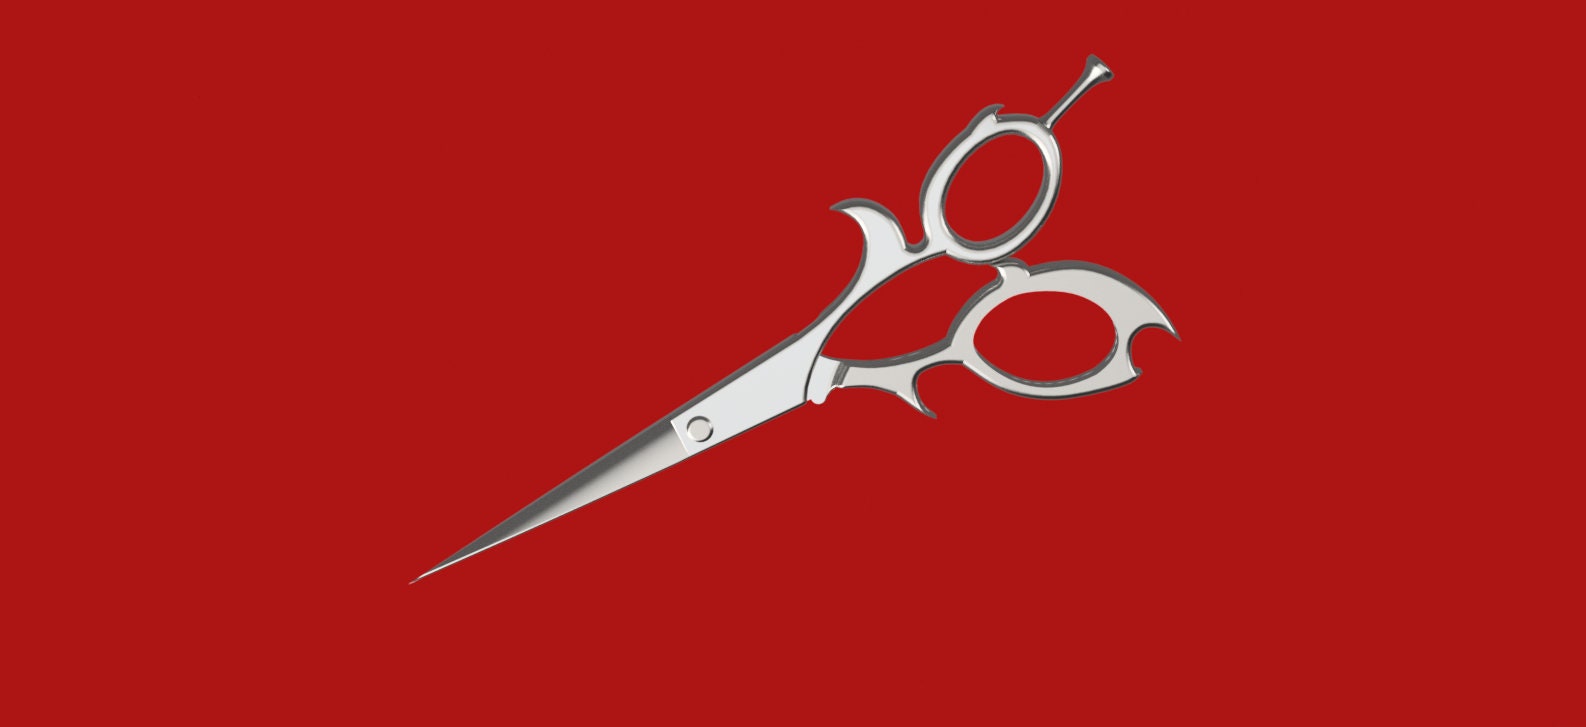 Giant Hairdresser Scissors Prop